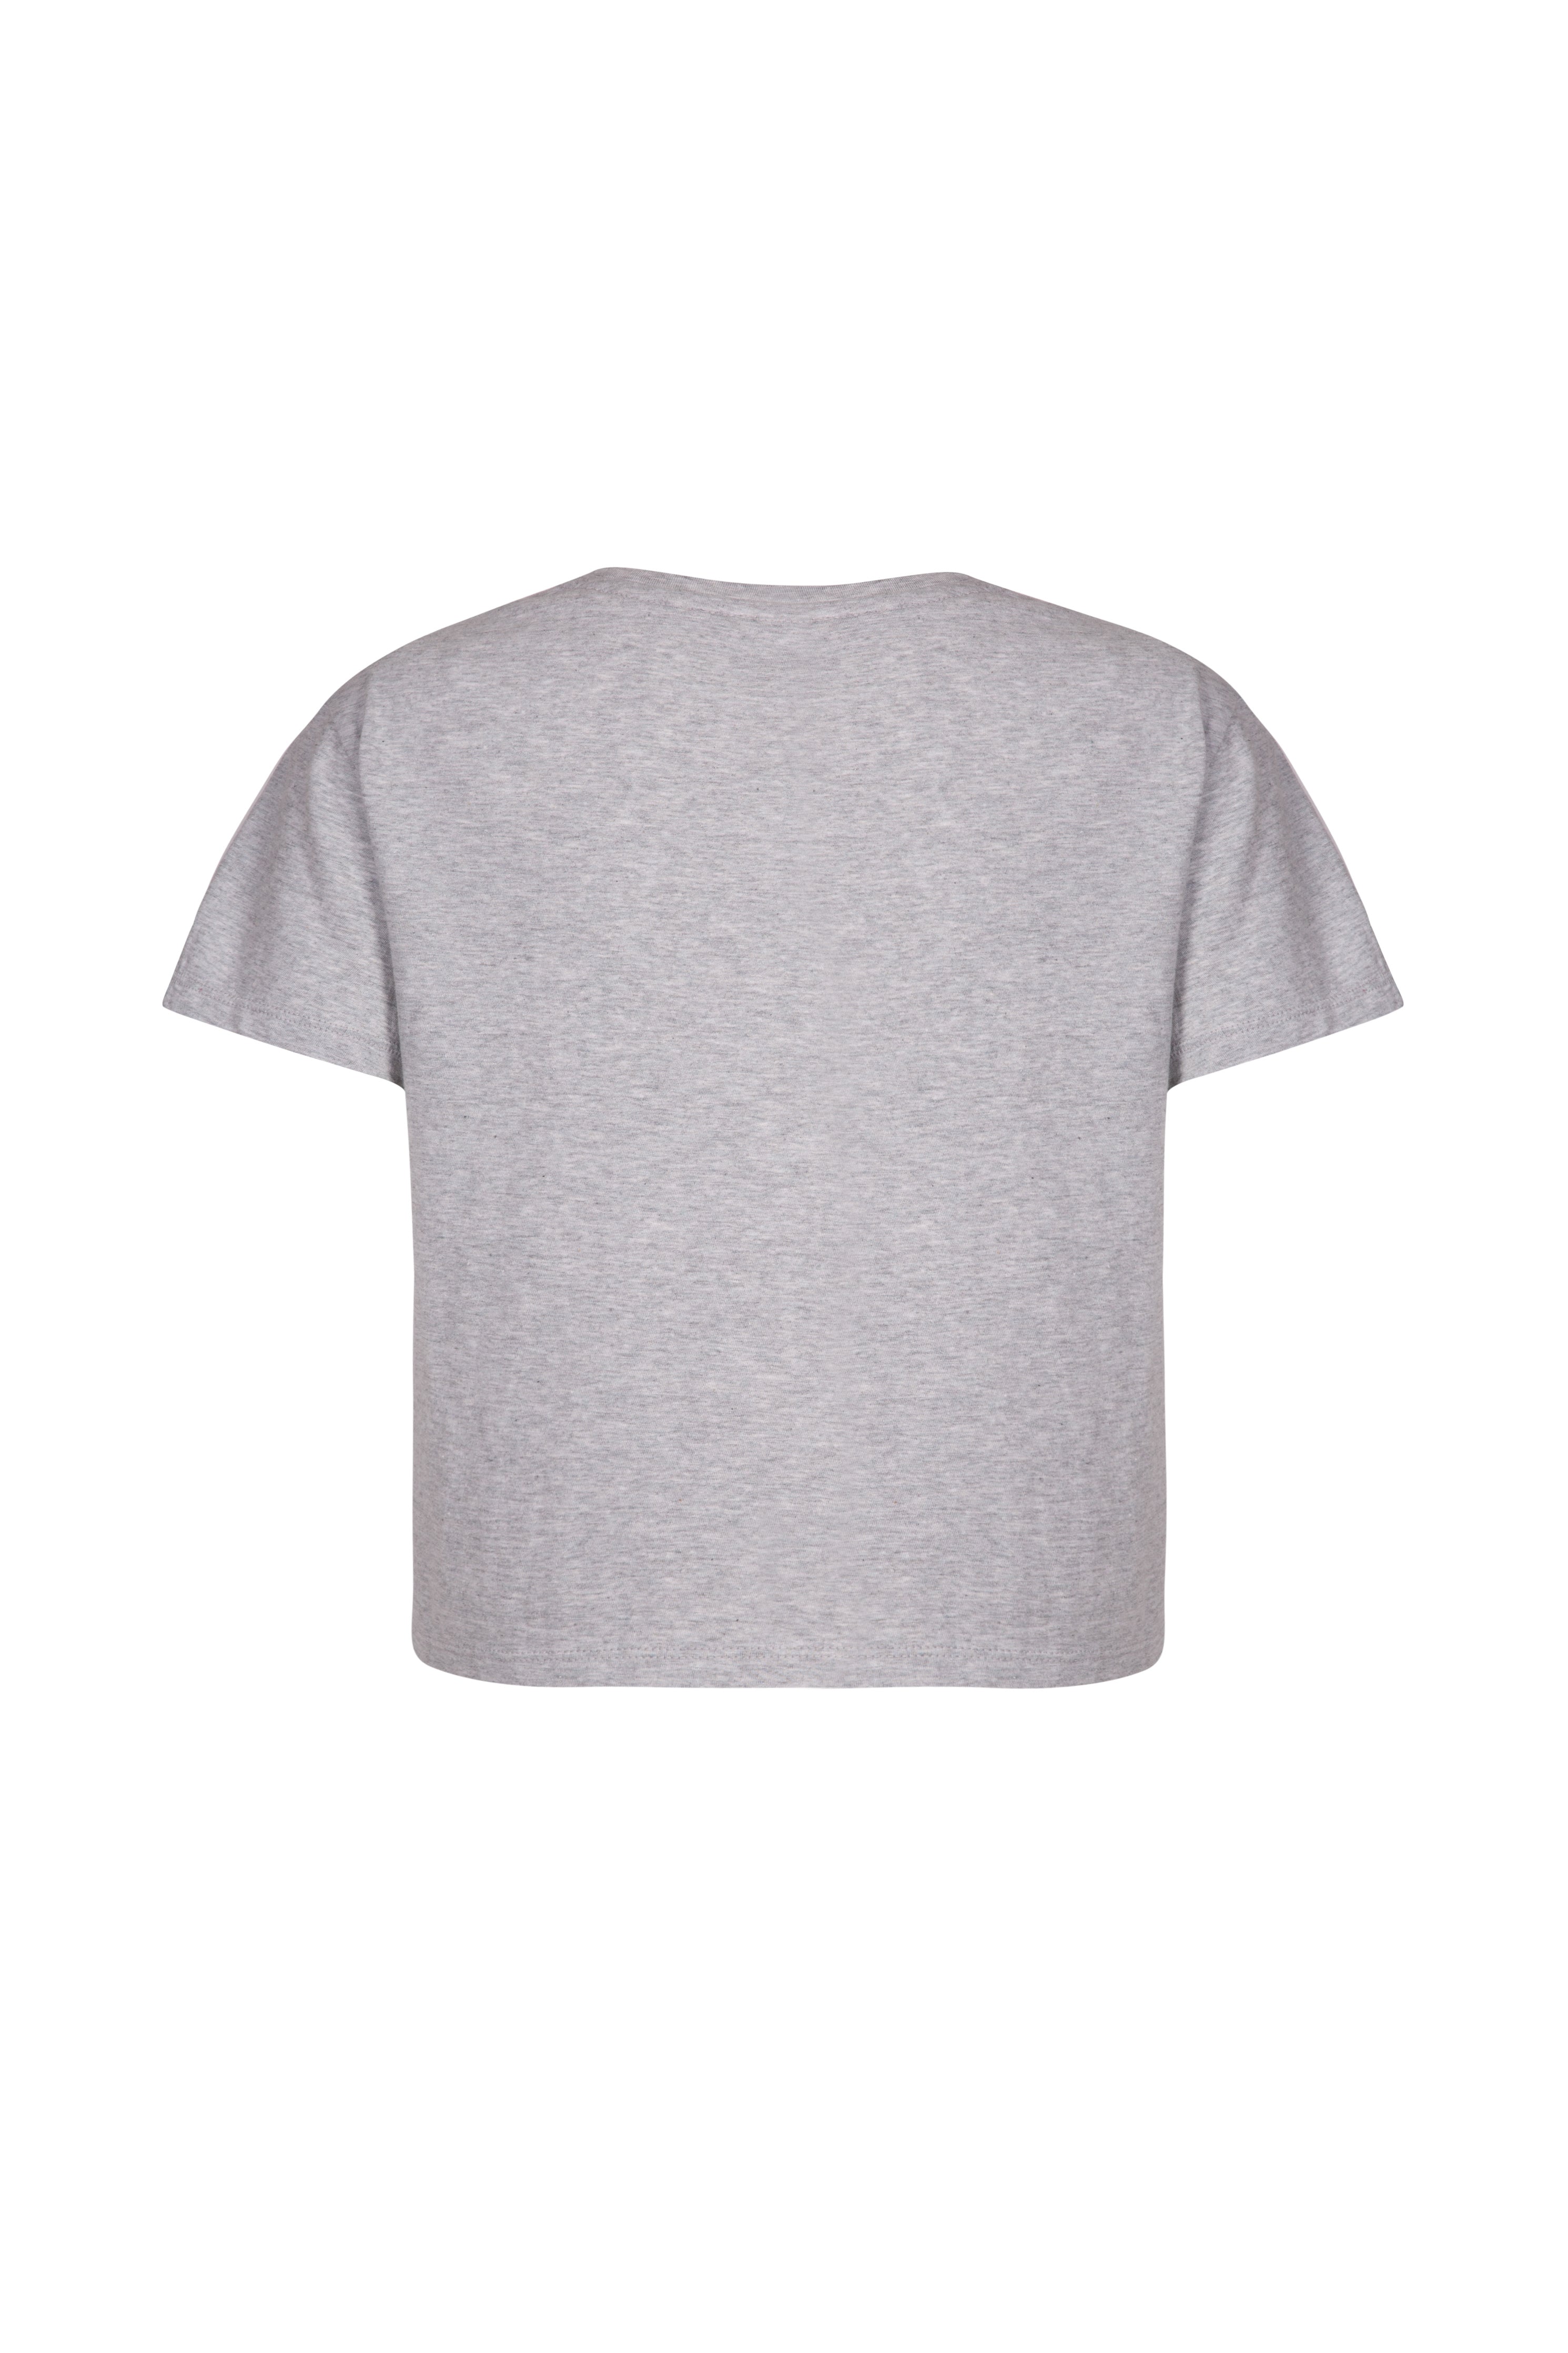 Back of grey organic cotton boxy fit women's T-shirt